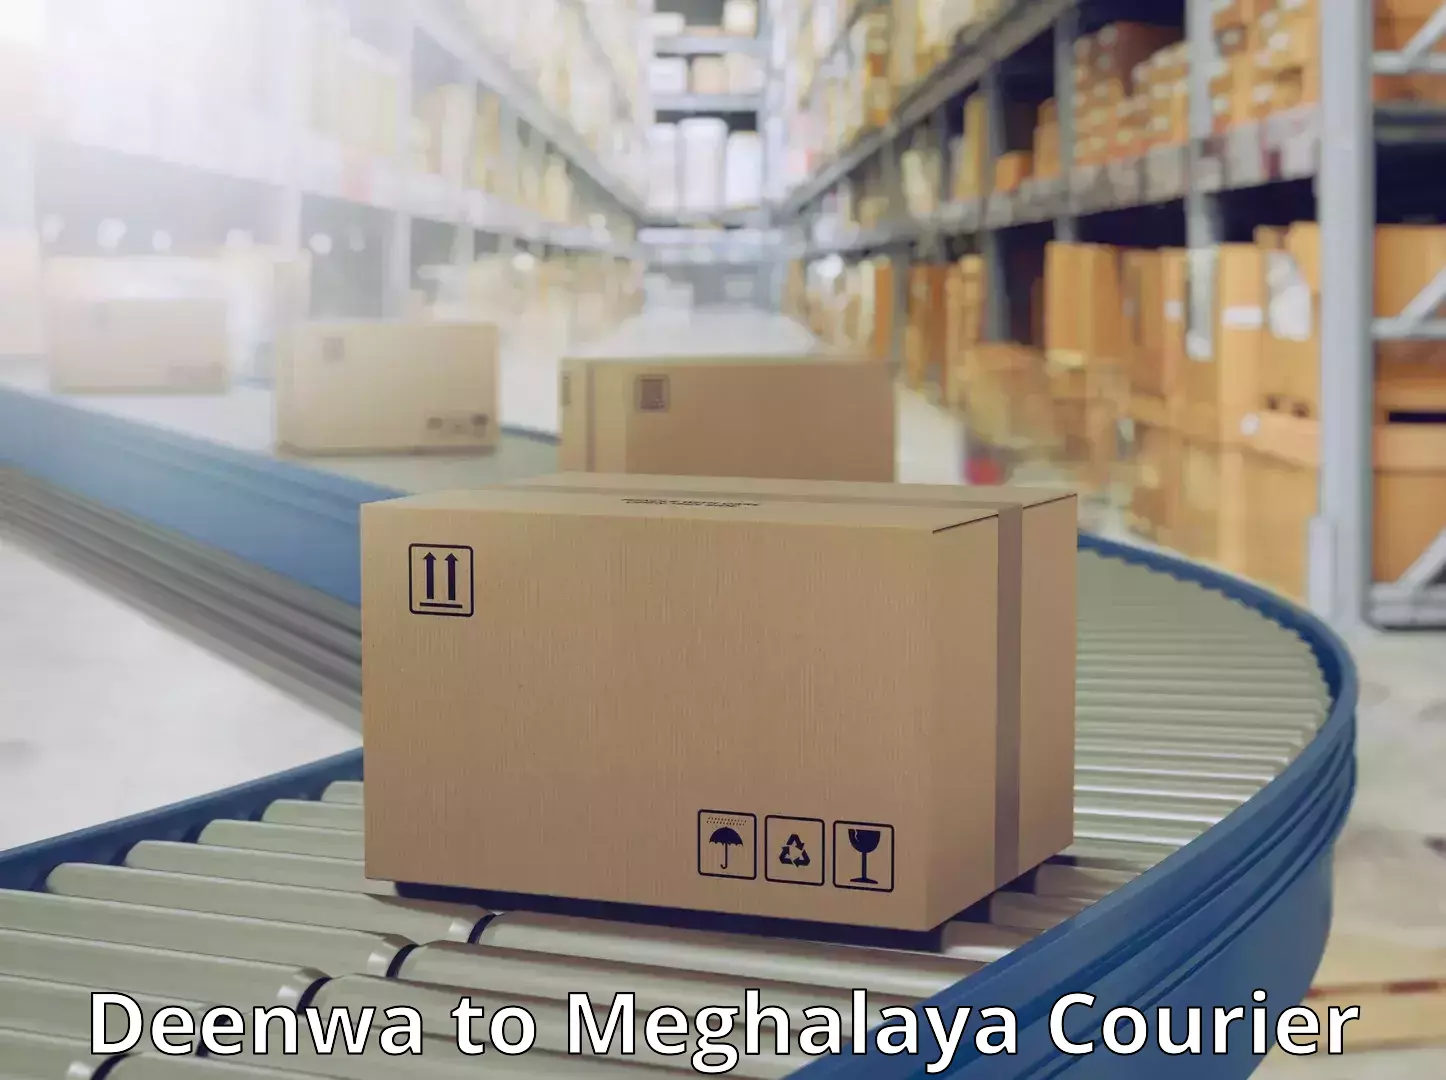 High-priority parcel service Deenwa to Jaintia Hills